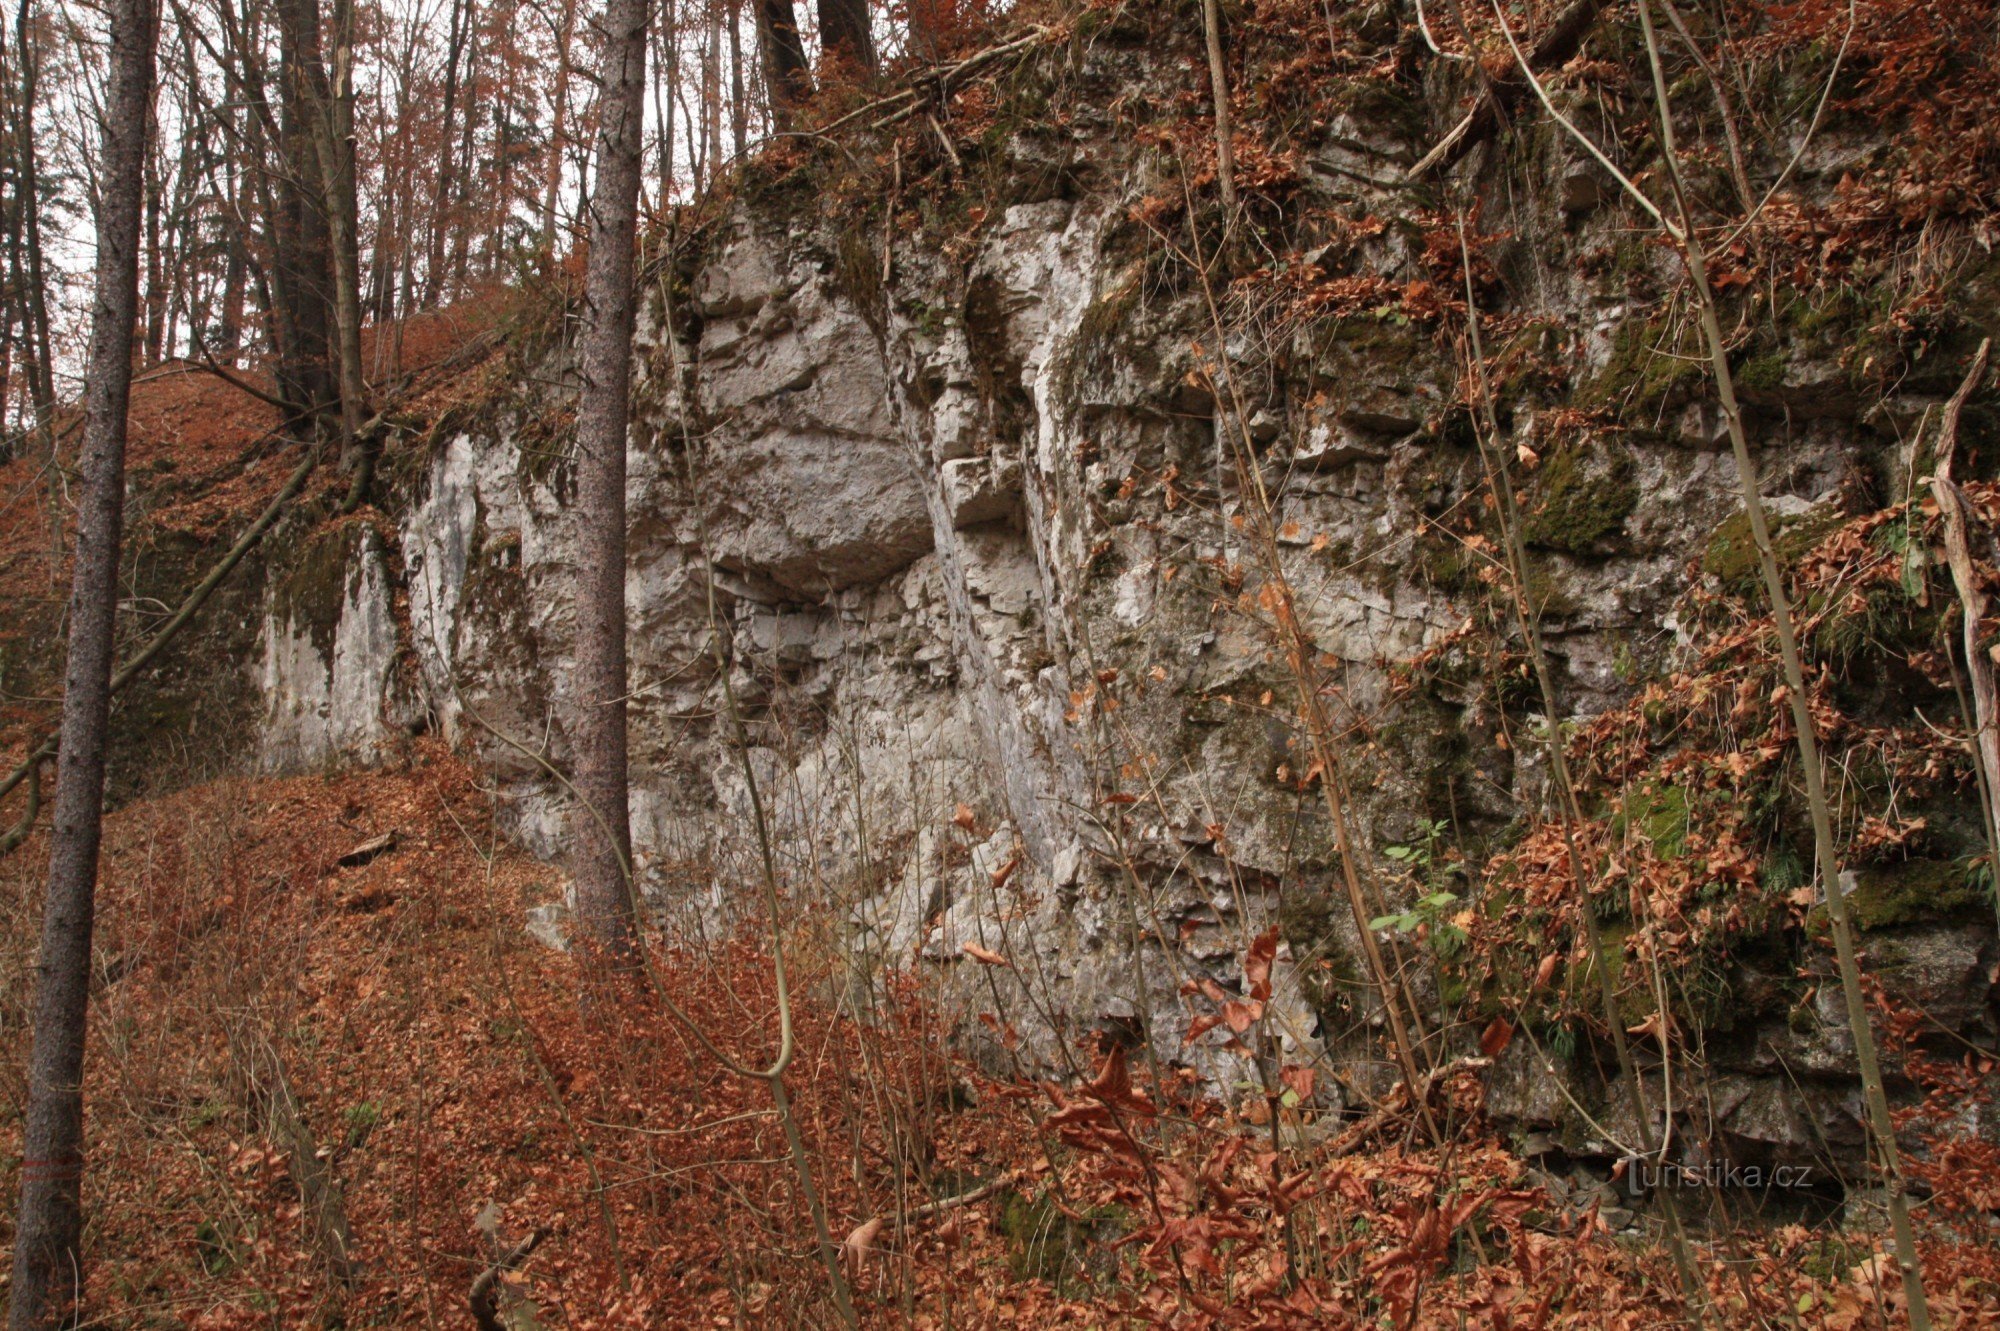 Stânci în Vaječník, în partea de sus intrarea în peștera din Vaječník